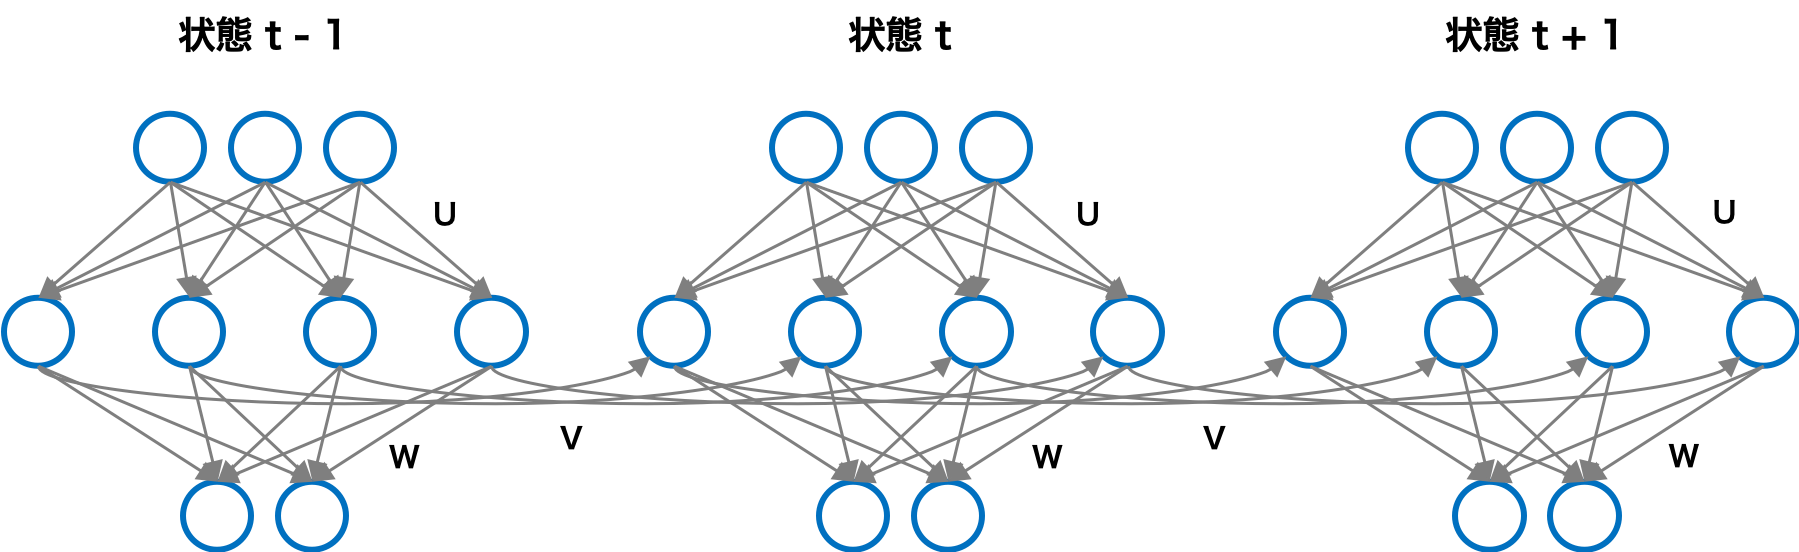 再帰型ニューラルネットワークの構造（展開表現）